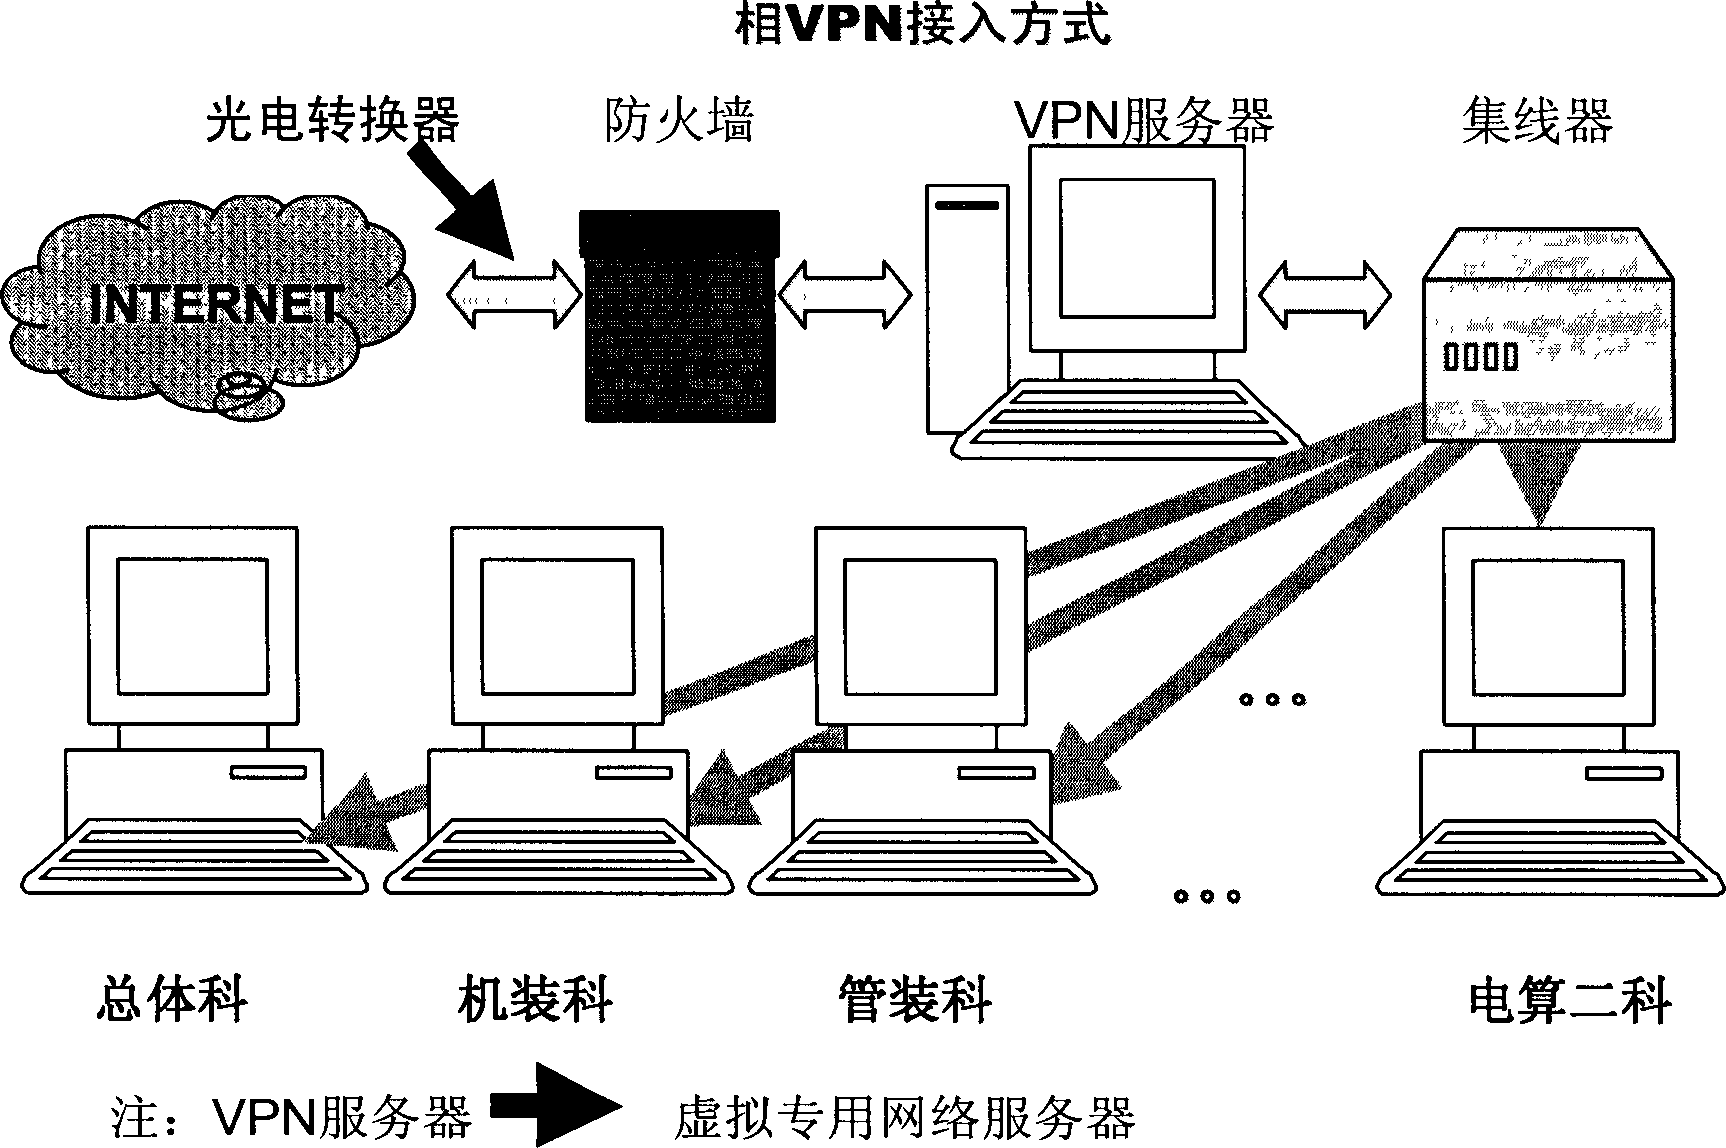 Remote cooperation design technique for civil ship